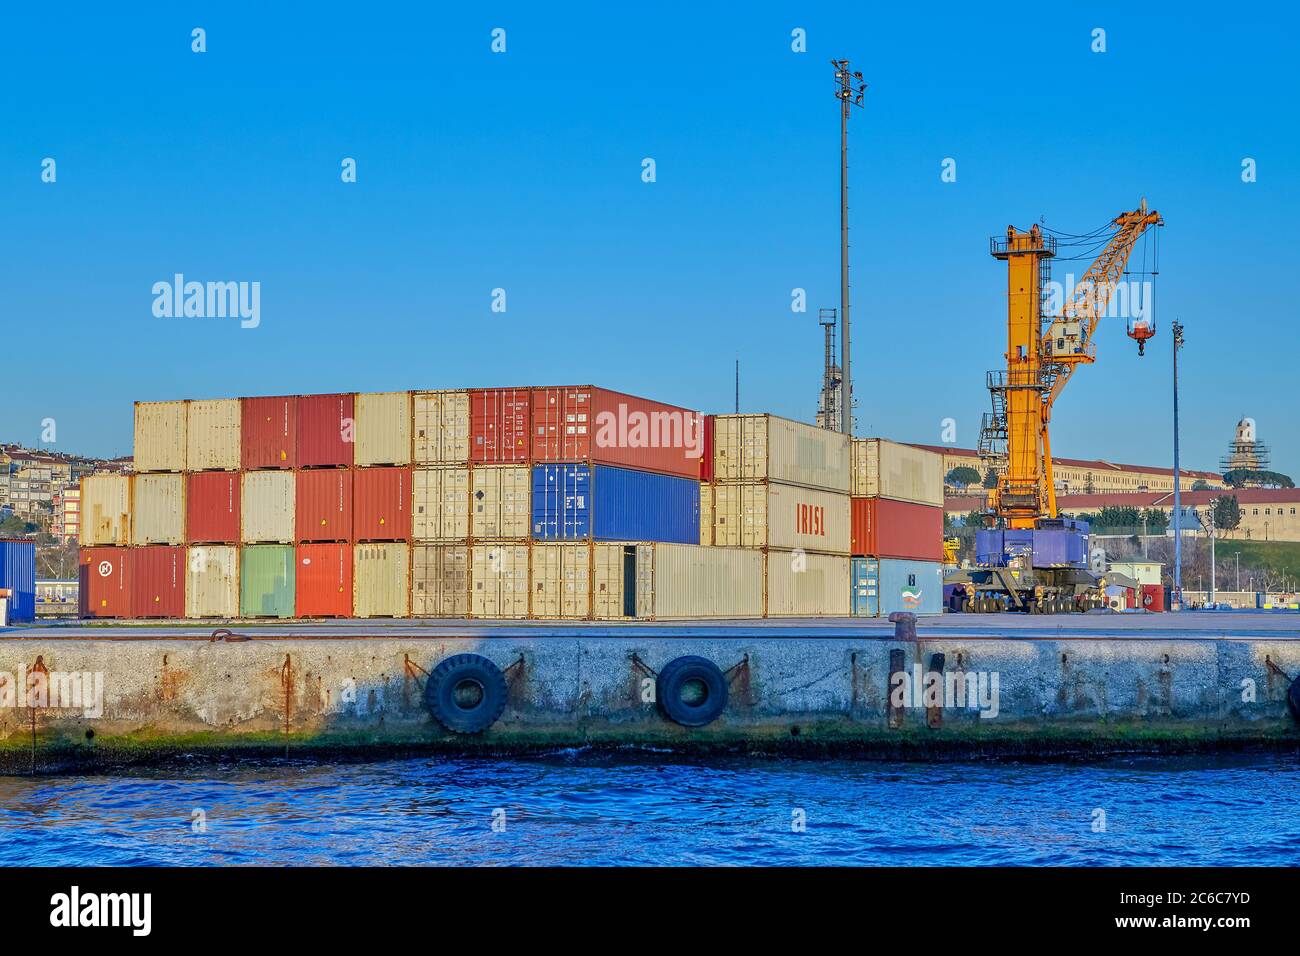 Estambul, Turquía - 13 de febrero de 2020: Terminal de contenedores para la  manipulación de carga en el muelle comercial del puerto marítimo.  Contenedores de mercancías para almacenamiento transporte de mercancías  Fotografía